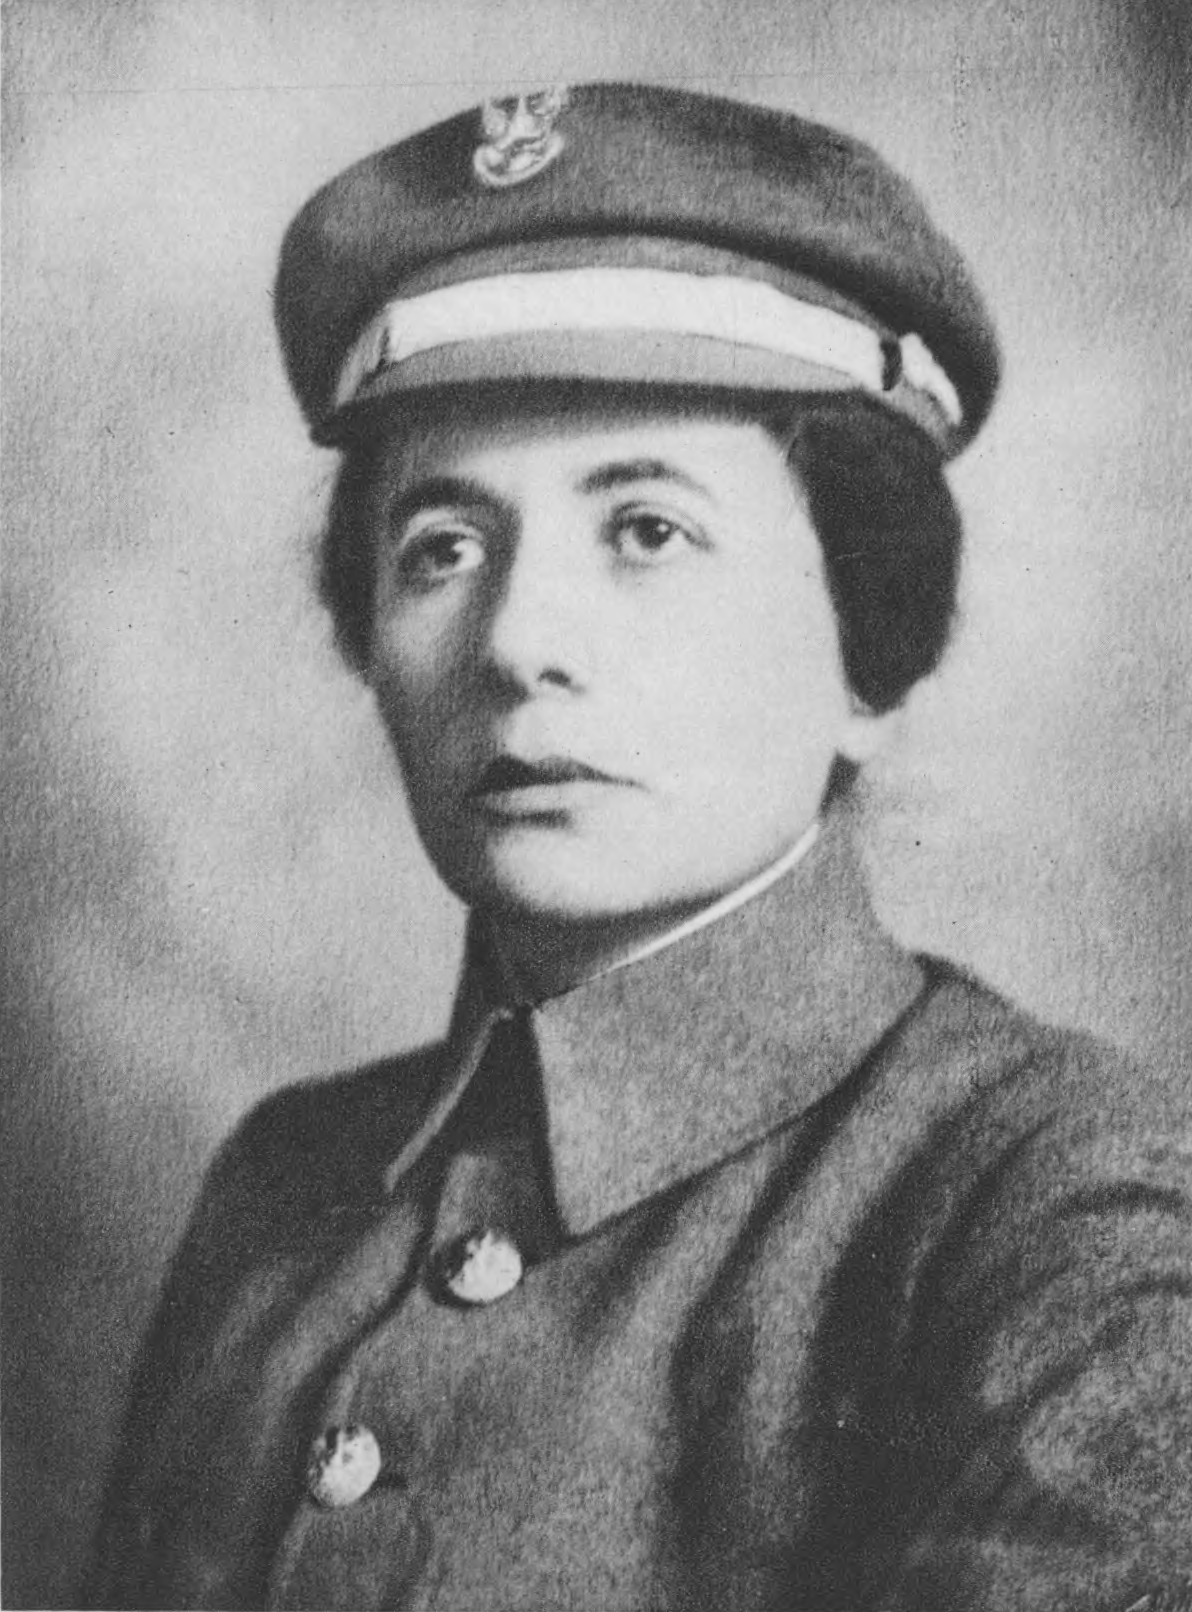 Aleksandra Zagórska. Source: Semper Fidelis, 1930